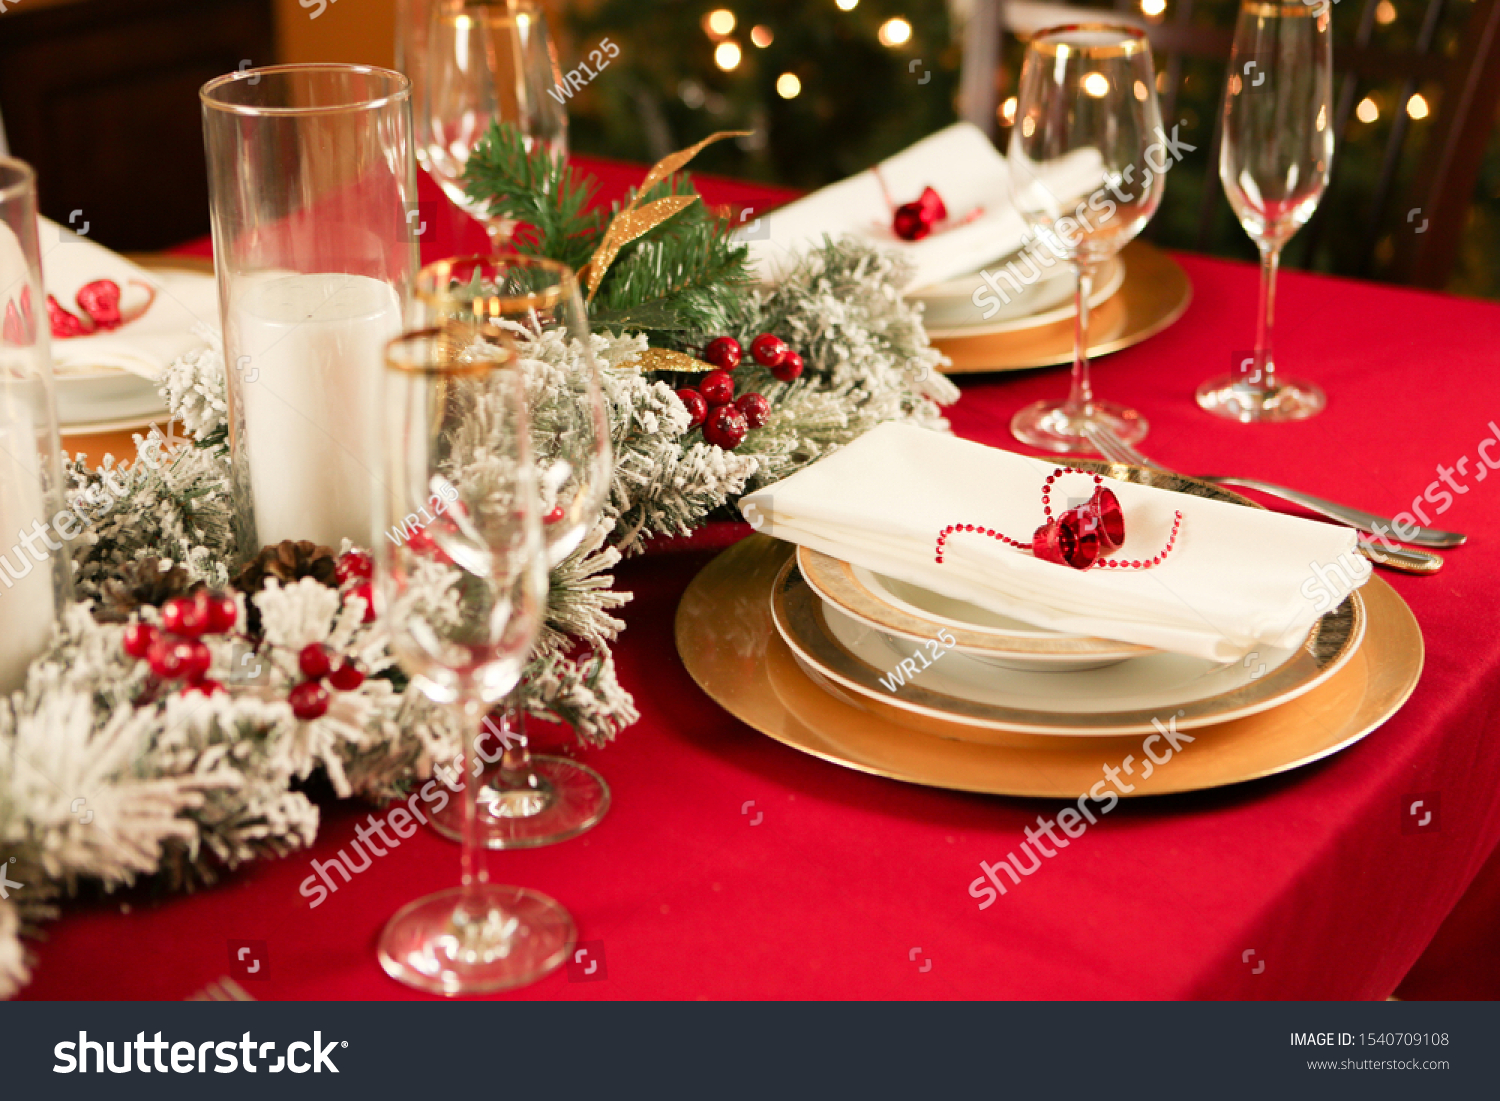 Christmas Dinner Gold Plates Stock Photo 1540709108 | Shutterstock